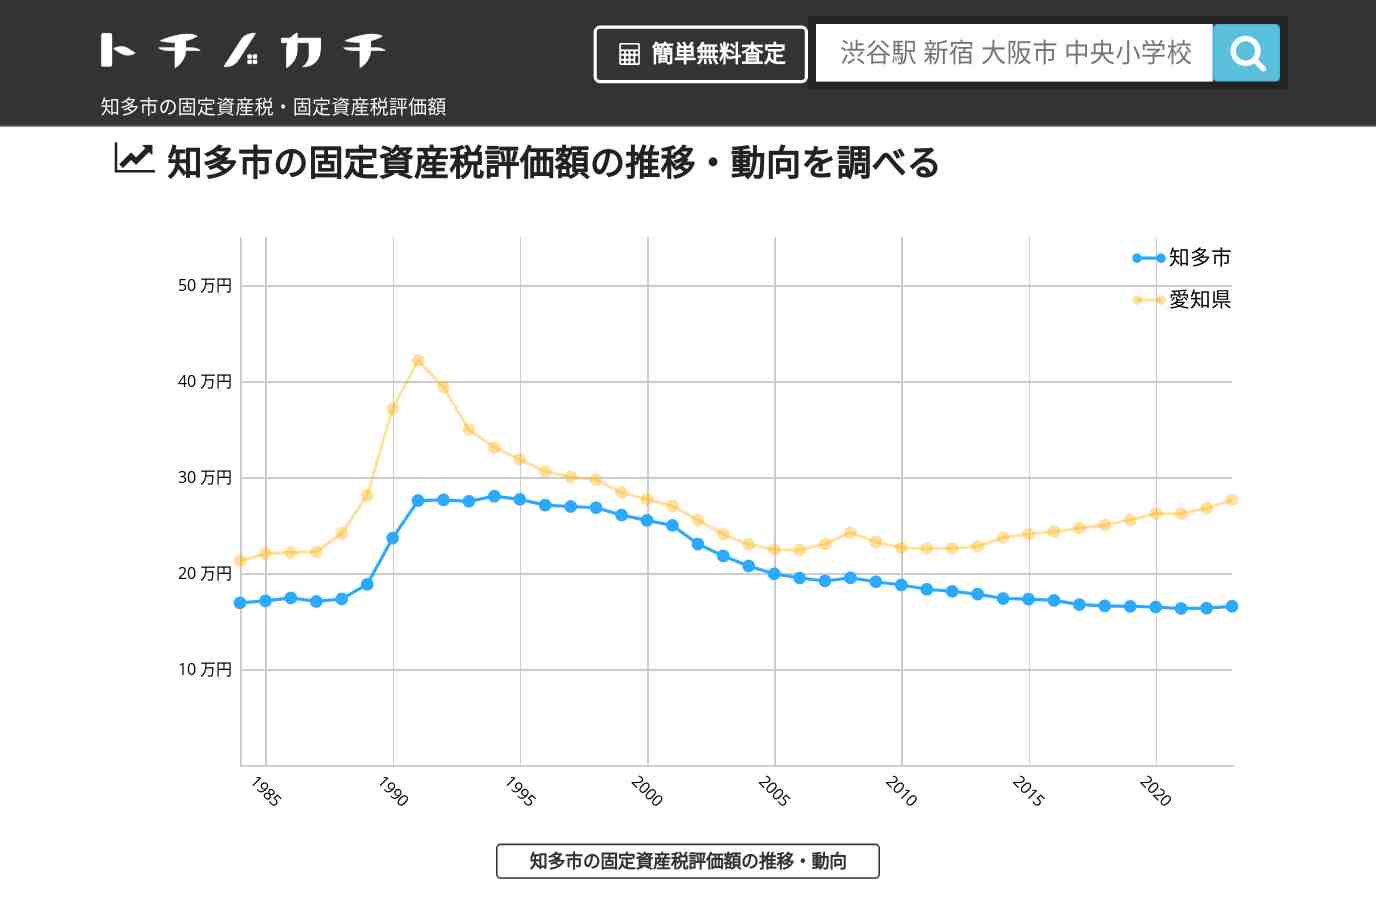 中部中学校(愛知県 知多市)周辺の固定資産税・固定資産税評価額 | トチノカチ